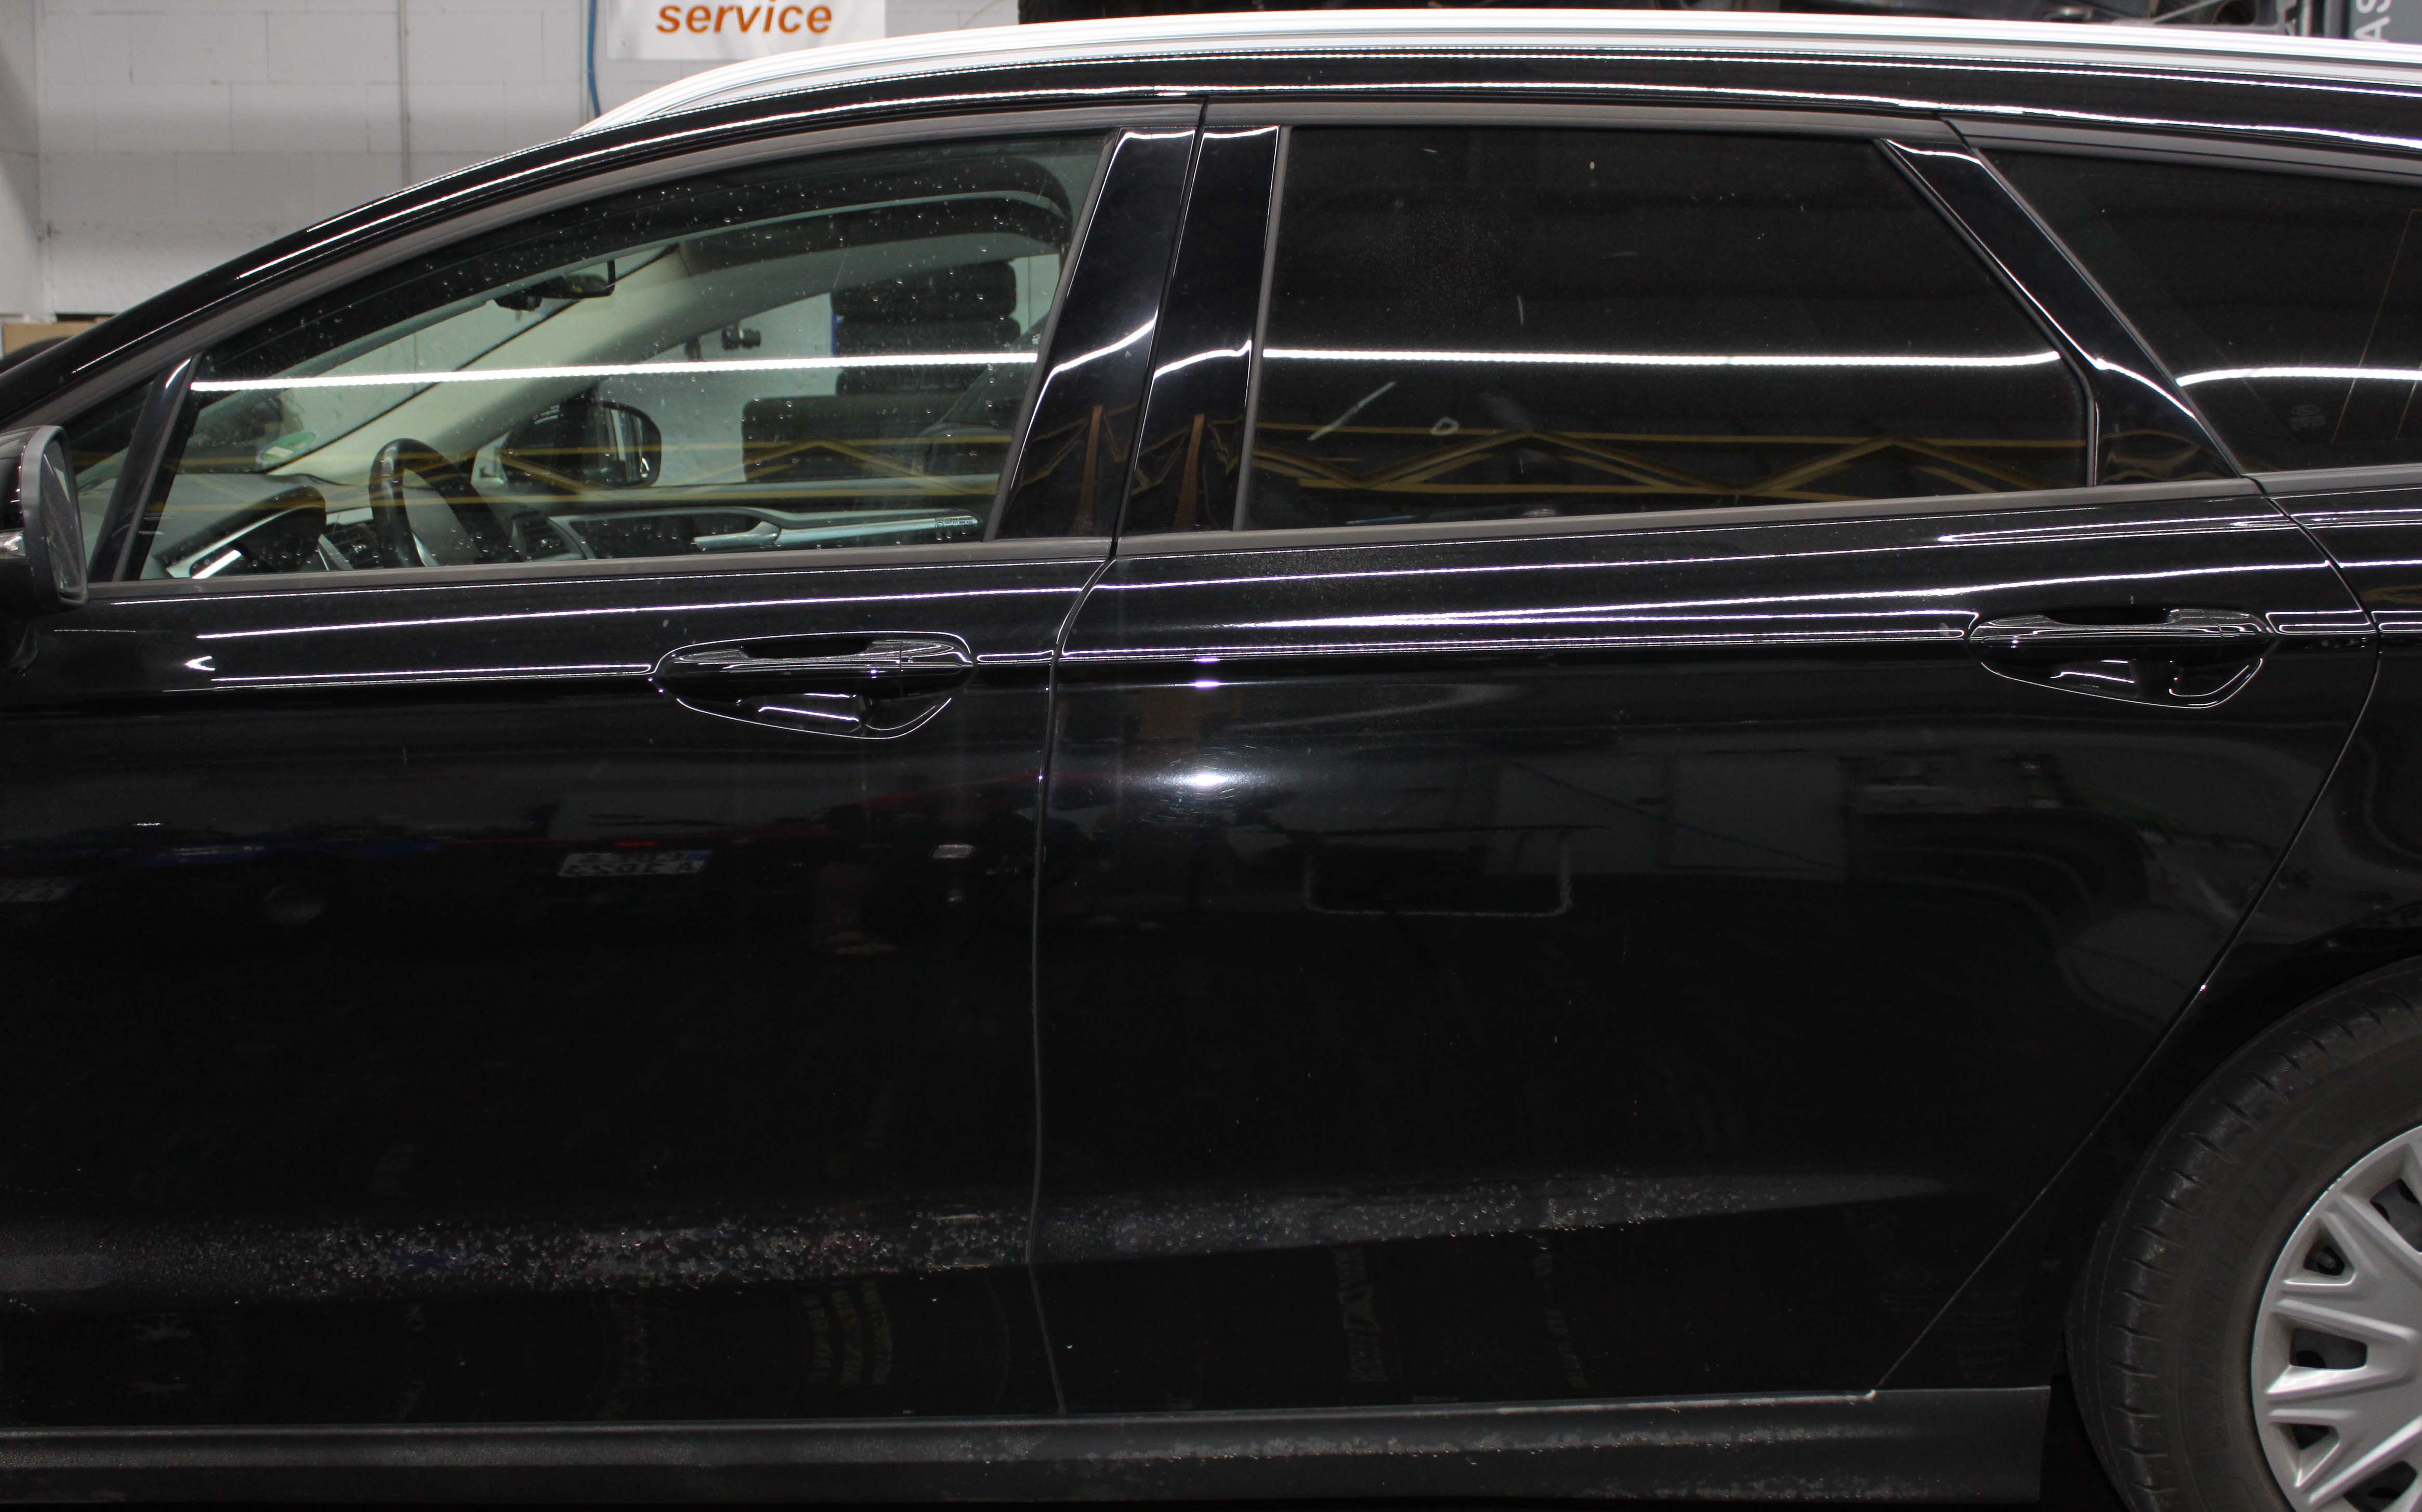 Autowaschservice innenraum autowaschanlage reinigungsstation sauberes  weißes limousinenauto arbeiter mit staubsauger mann poliert scheinwerfer  abwischen getönte fenster fahrzeug schwarze matten vektorillustration